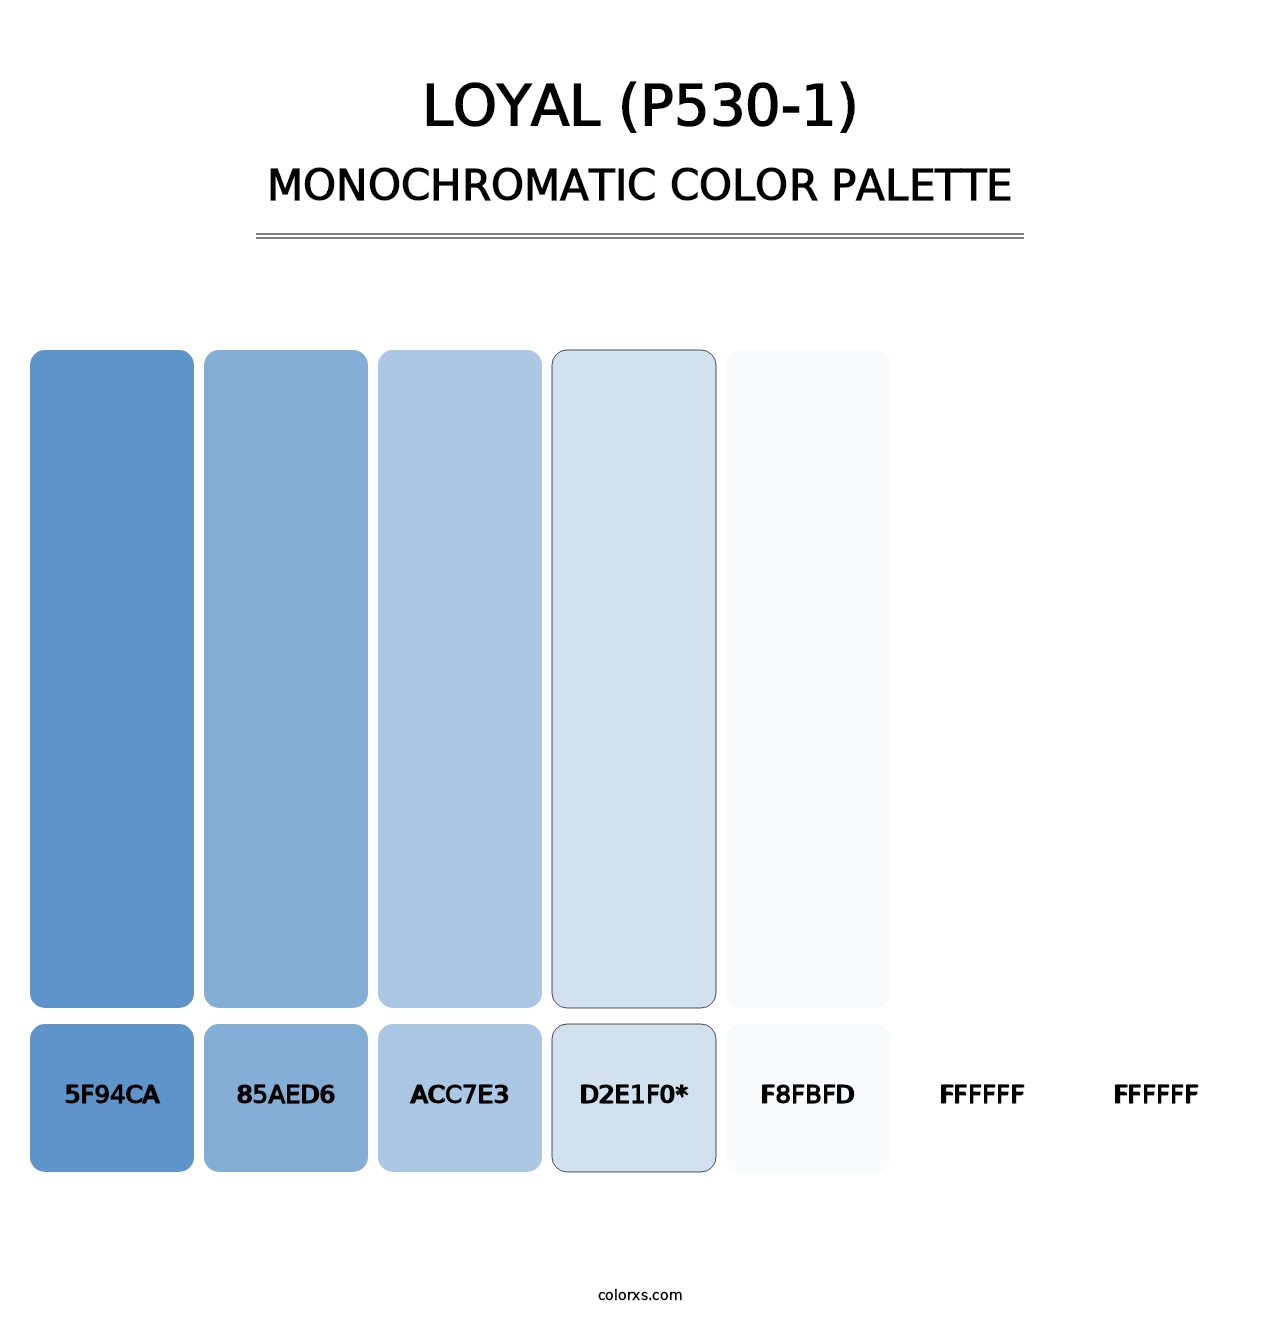 Loyal (P530-1) - Monochromatic Color Palette